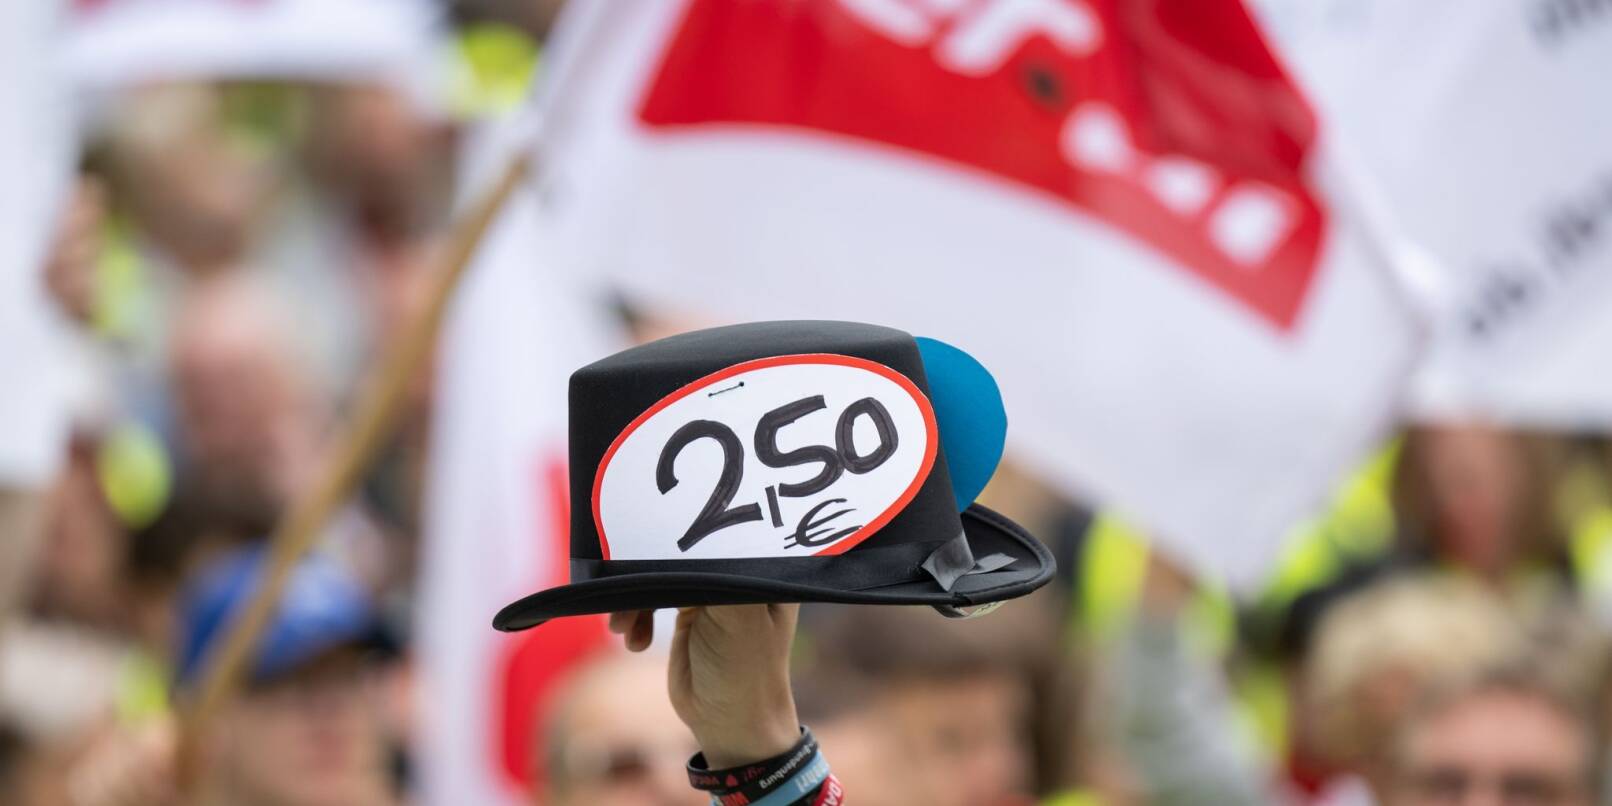 Ein Hut mit Sticker "2,50€" wird während der Kundgebung hochgehalten.